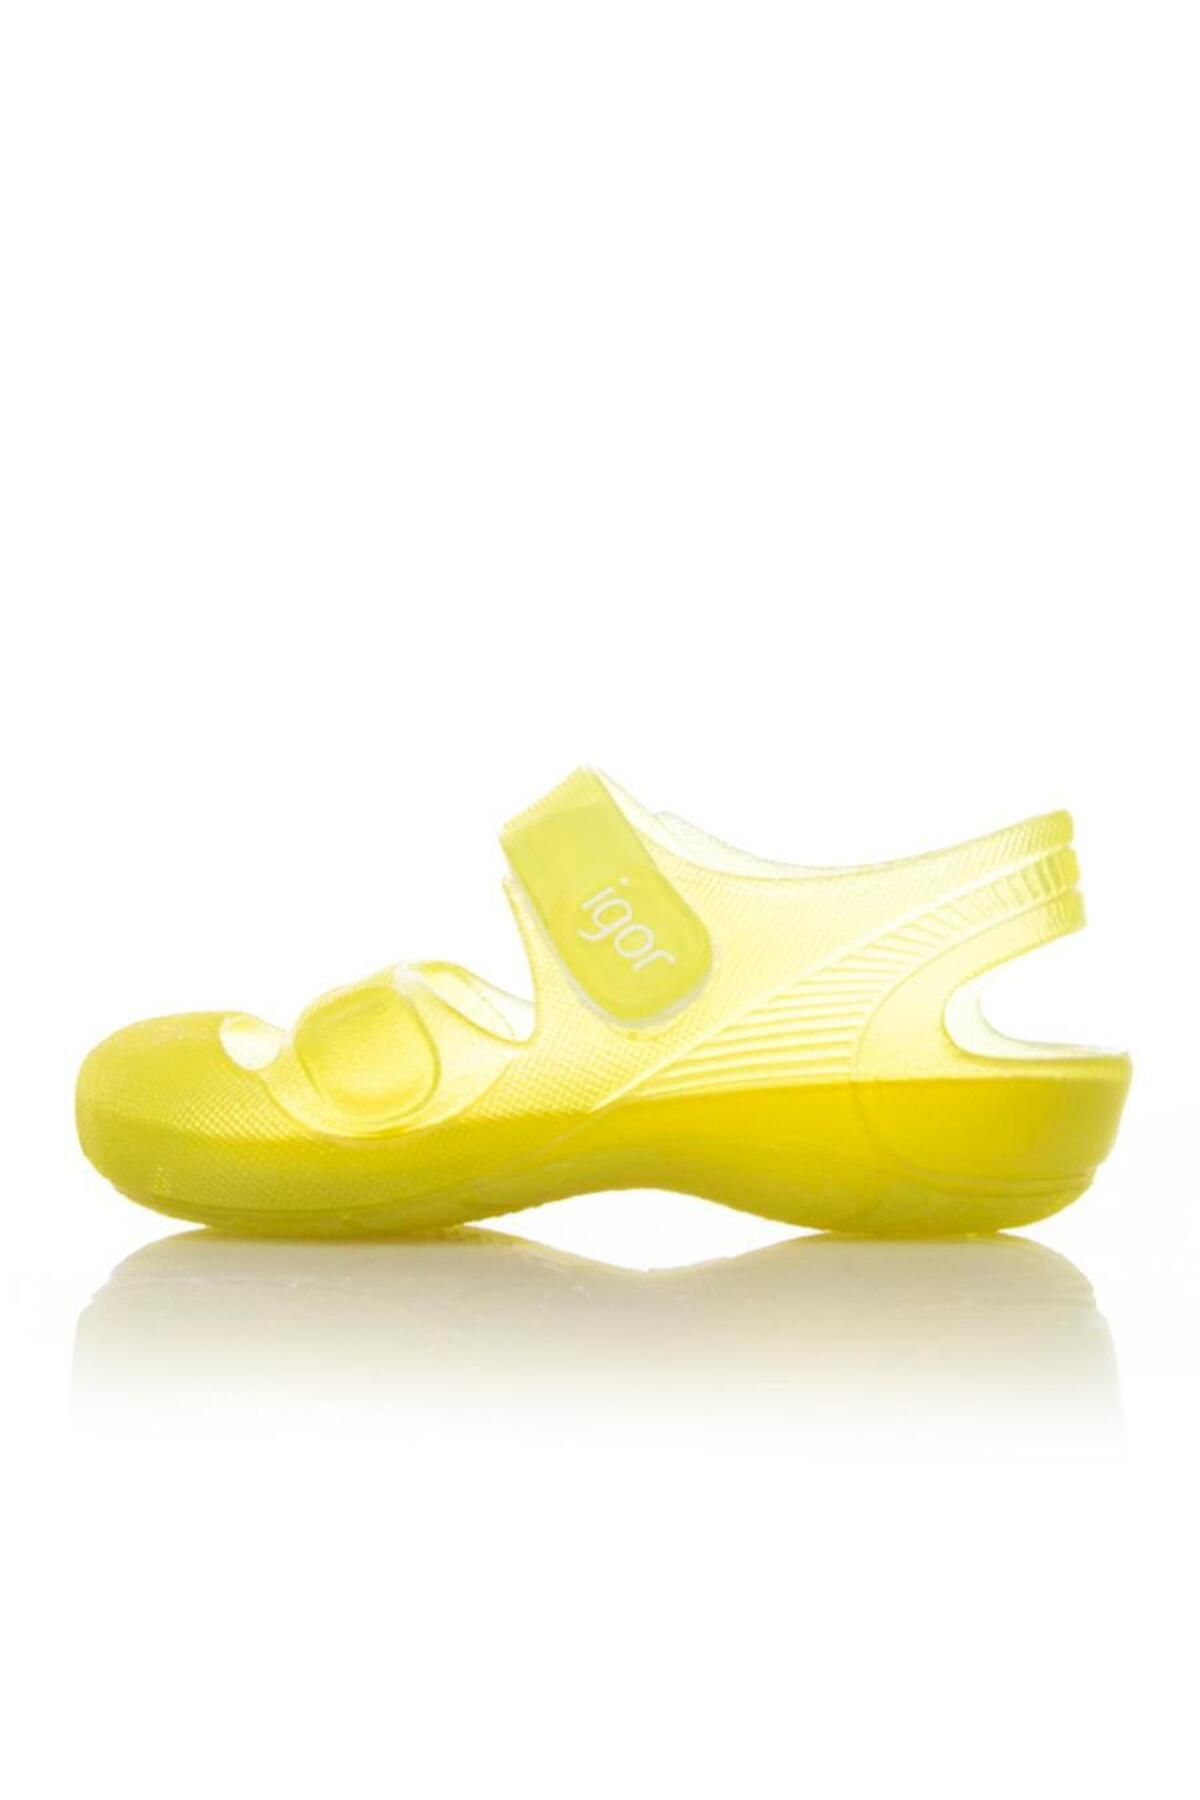 IGOR Çocuk Cirtli Sandalet S10110 Bondi